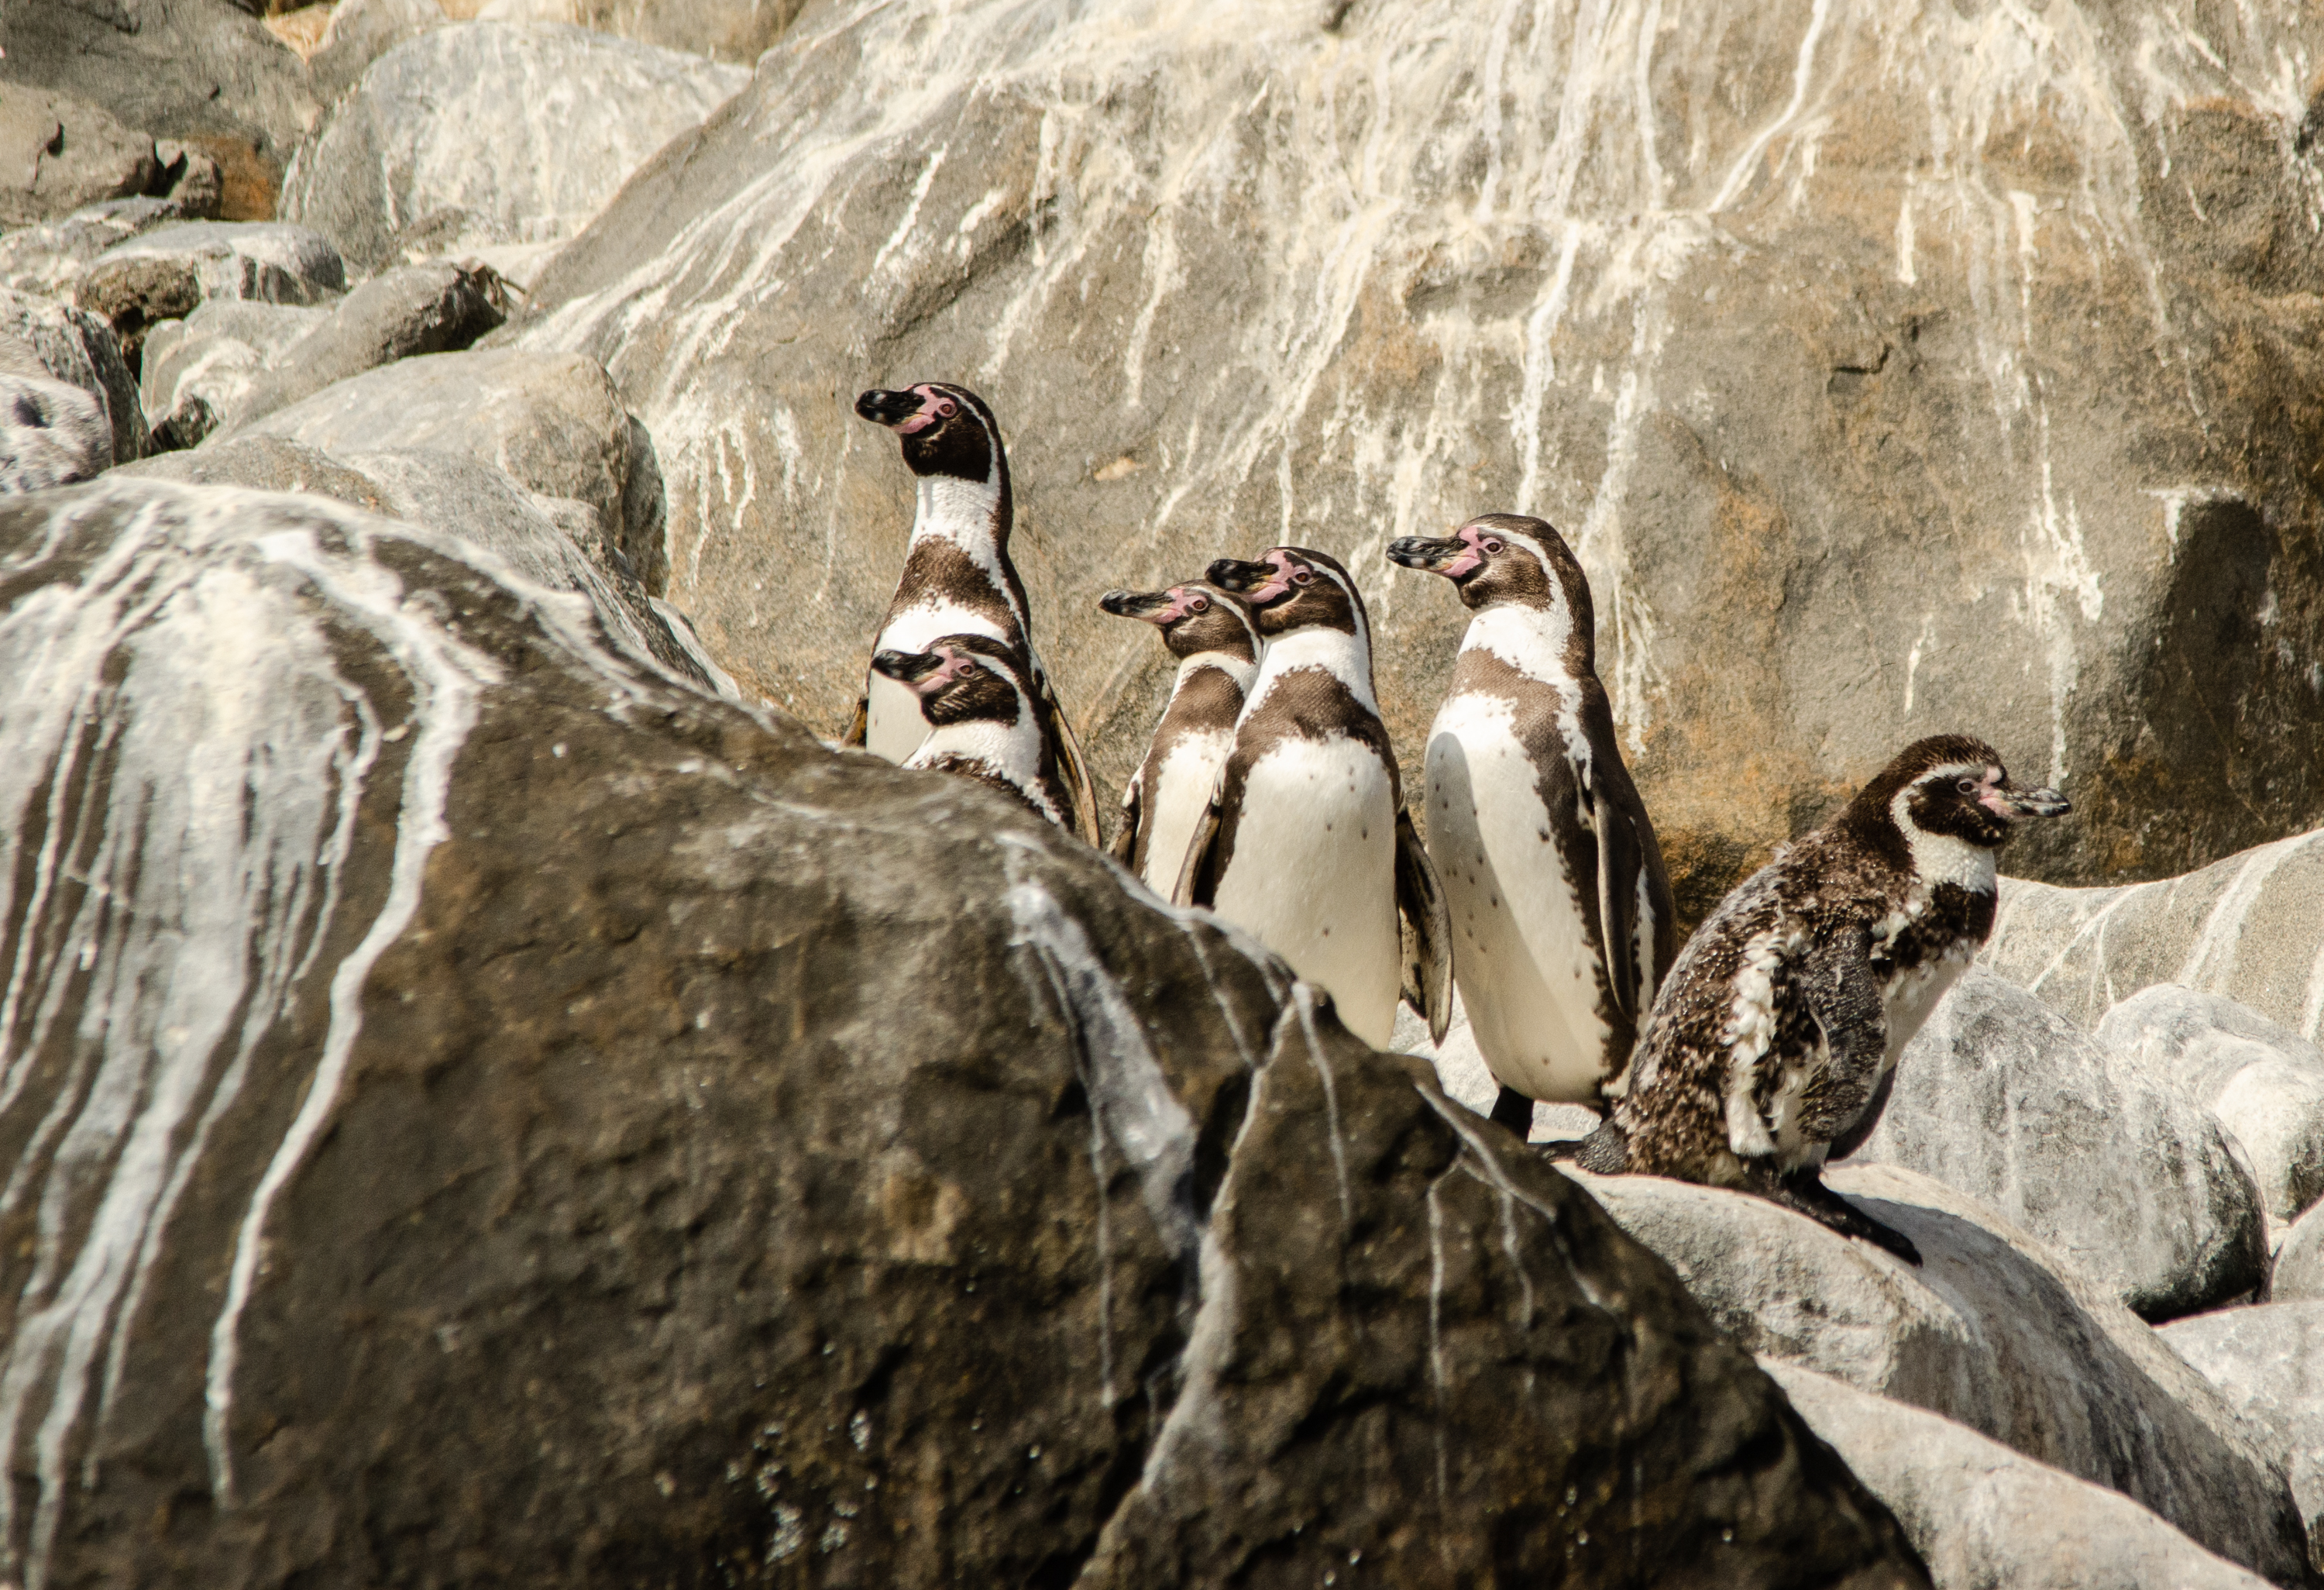 Ambientalistas afirman que la Reserva Nacional Pingüino Humboldt se verá amenazada por el funcionamiento de la minera. Fuente: Oceana.org